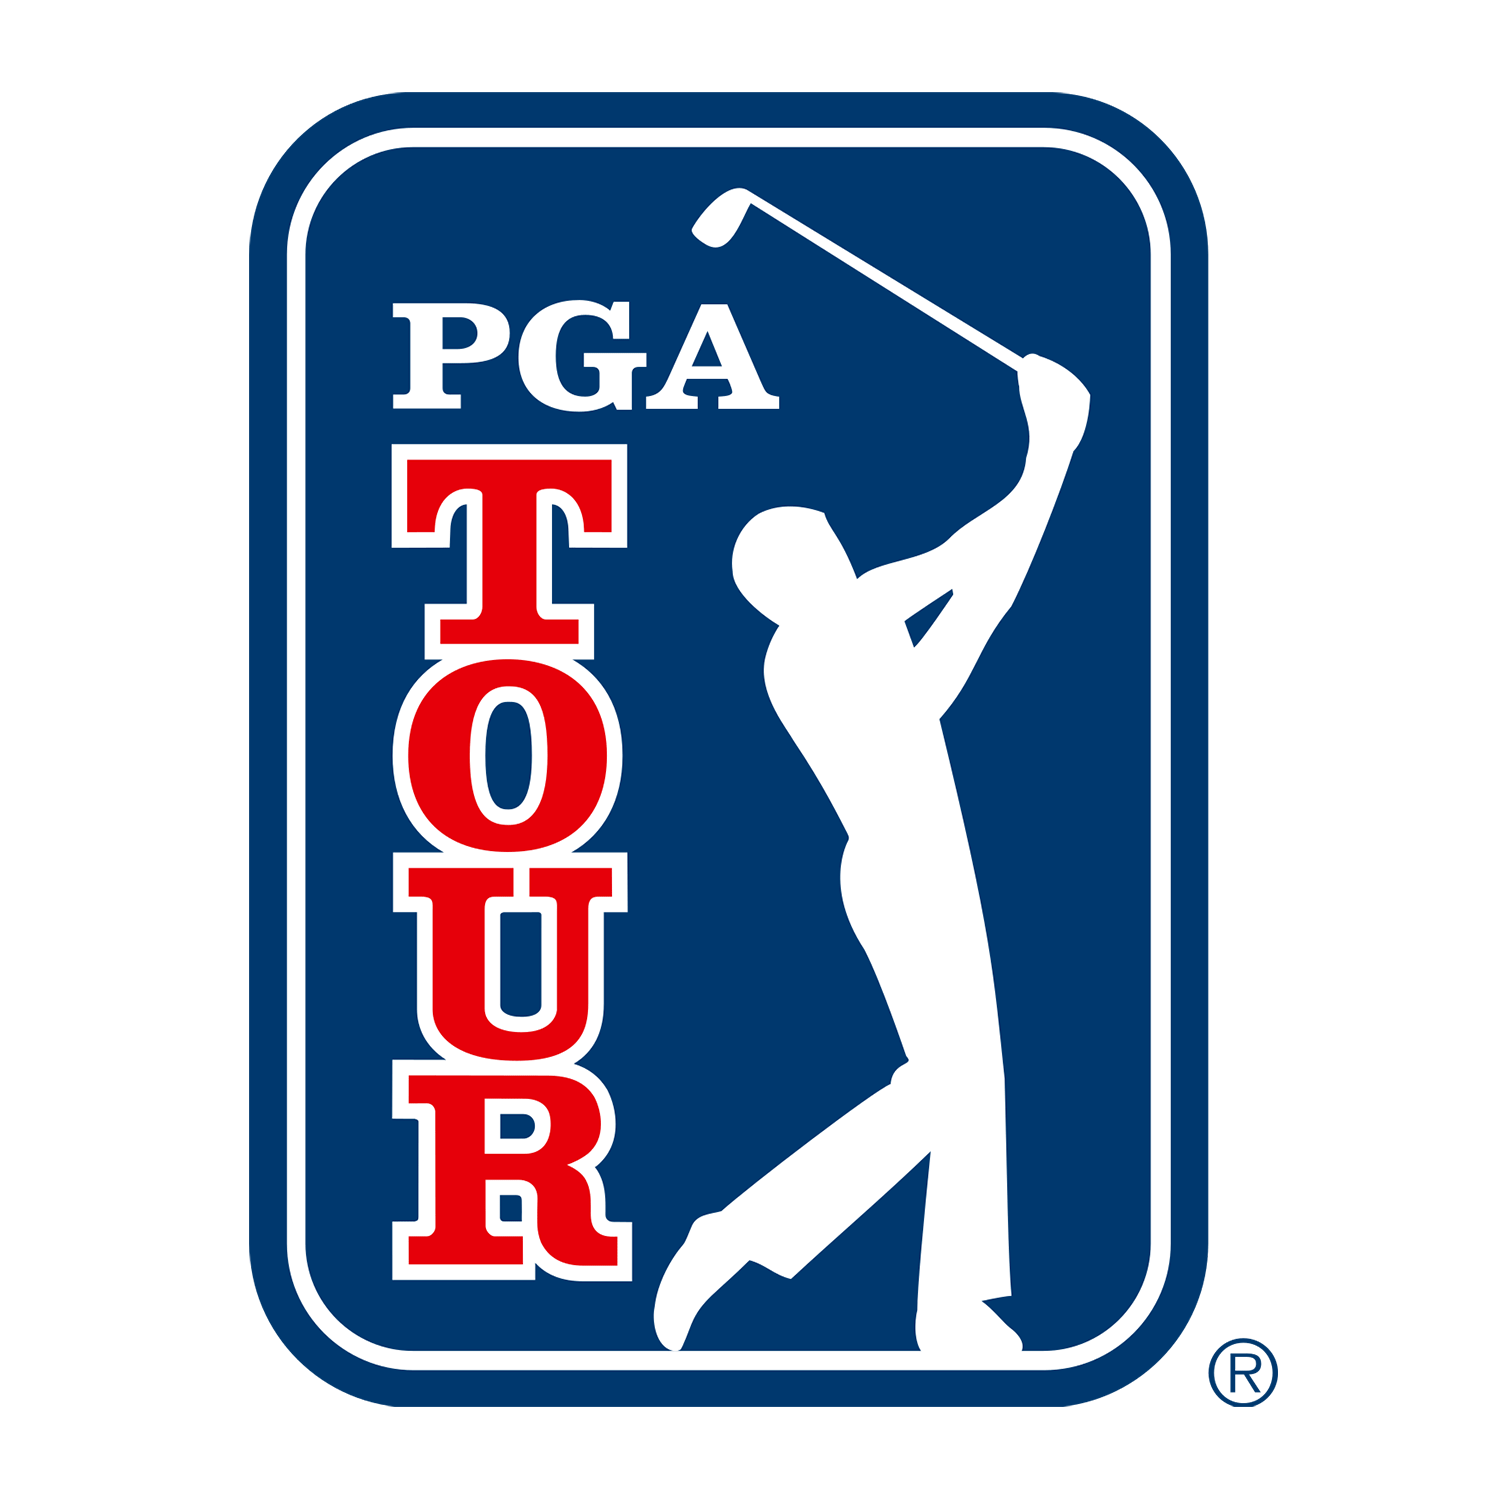 PGA_Tour_logo.png